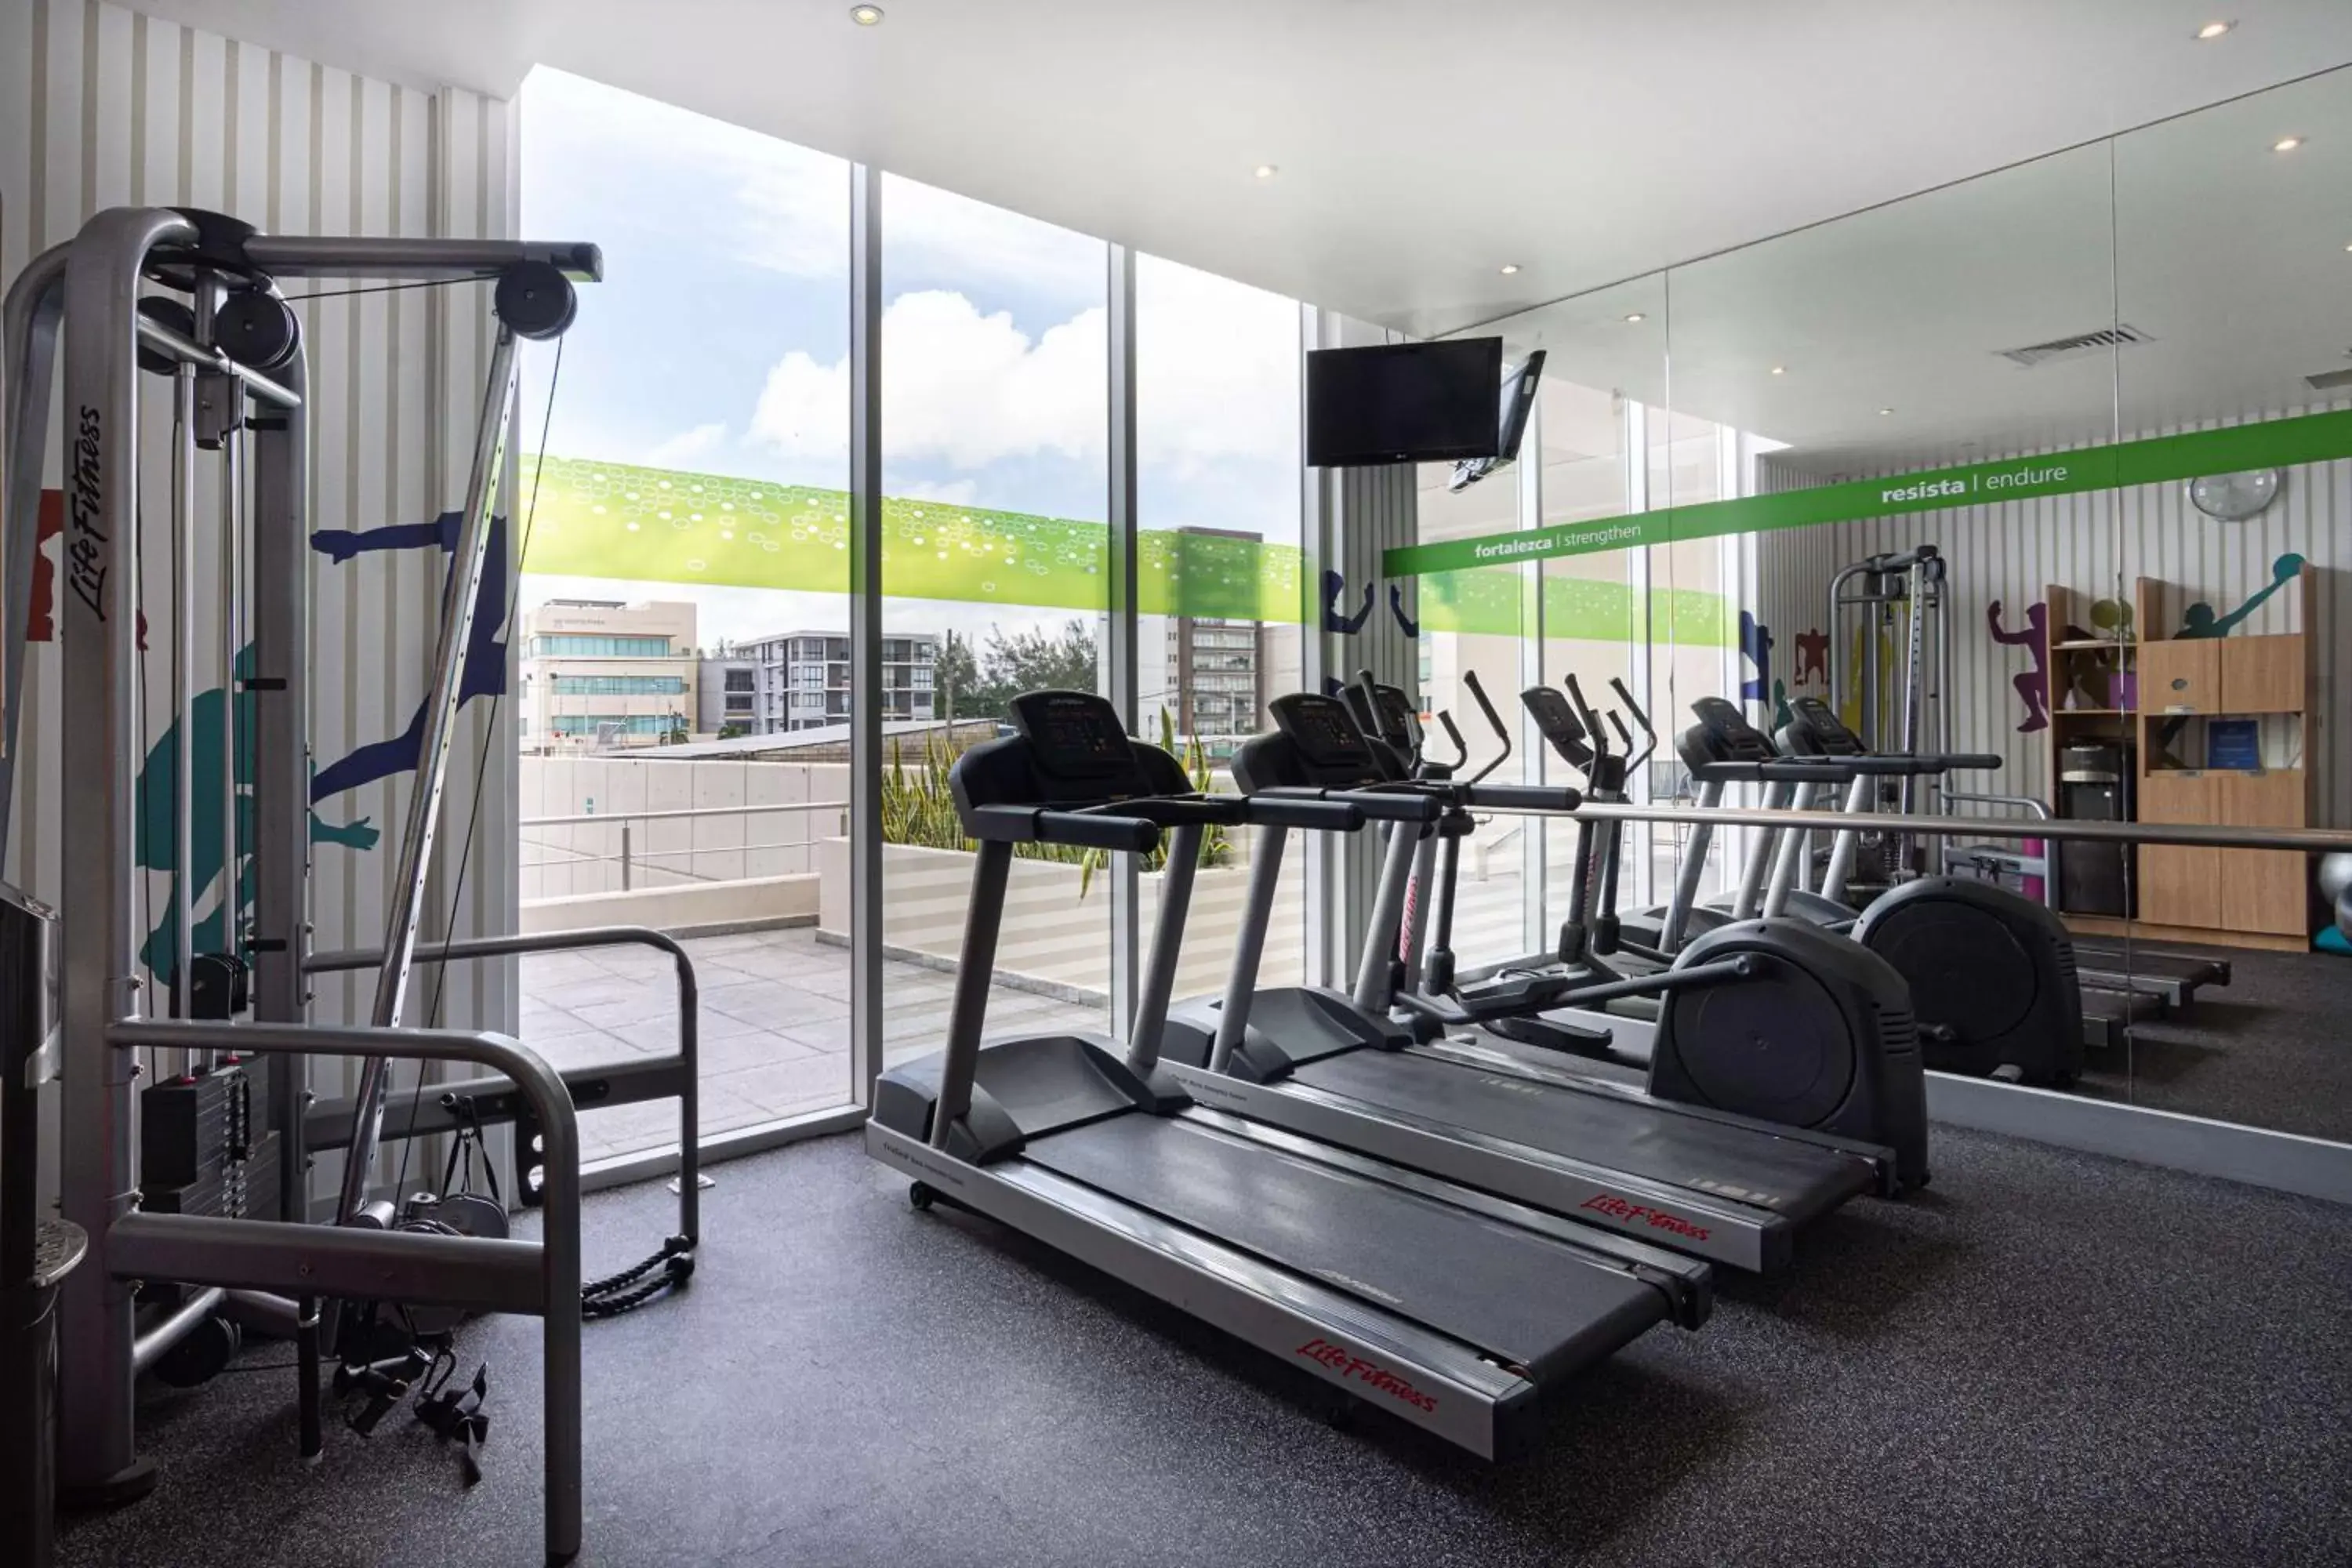 Fitness centre/facilities, Fitness Center/Facilities in Hampton by Hilton Veracruz Boca Del Rio